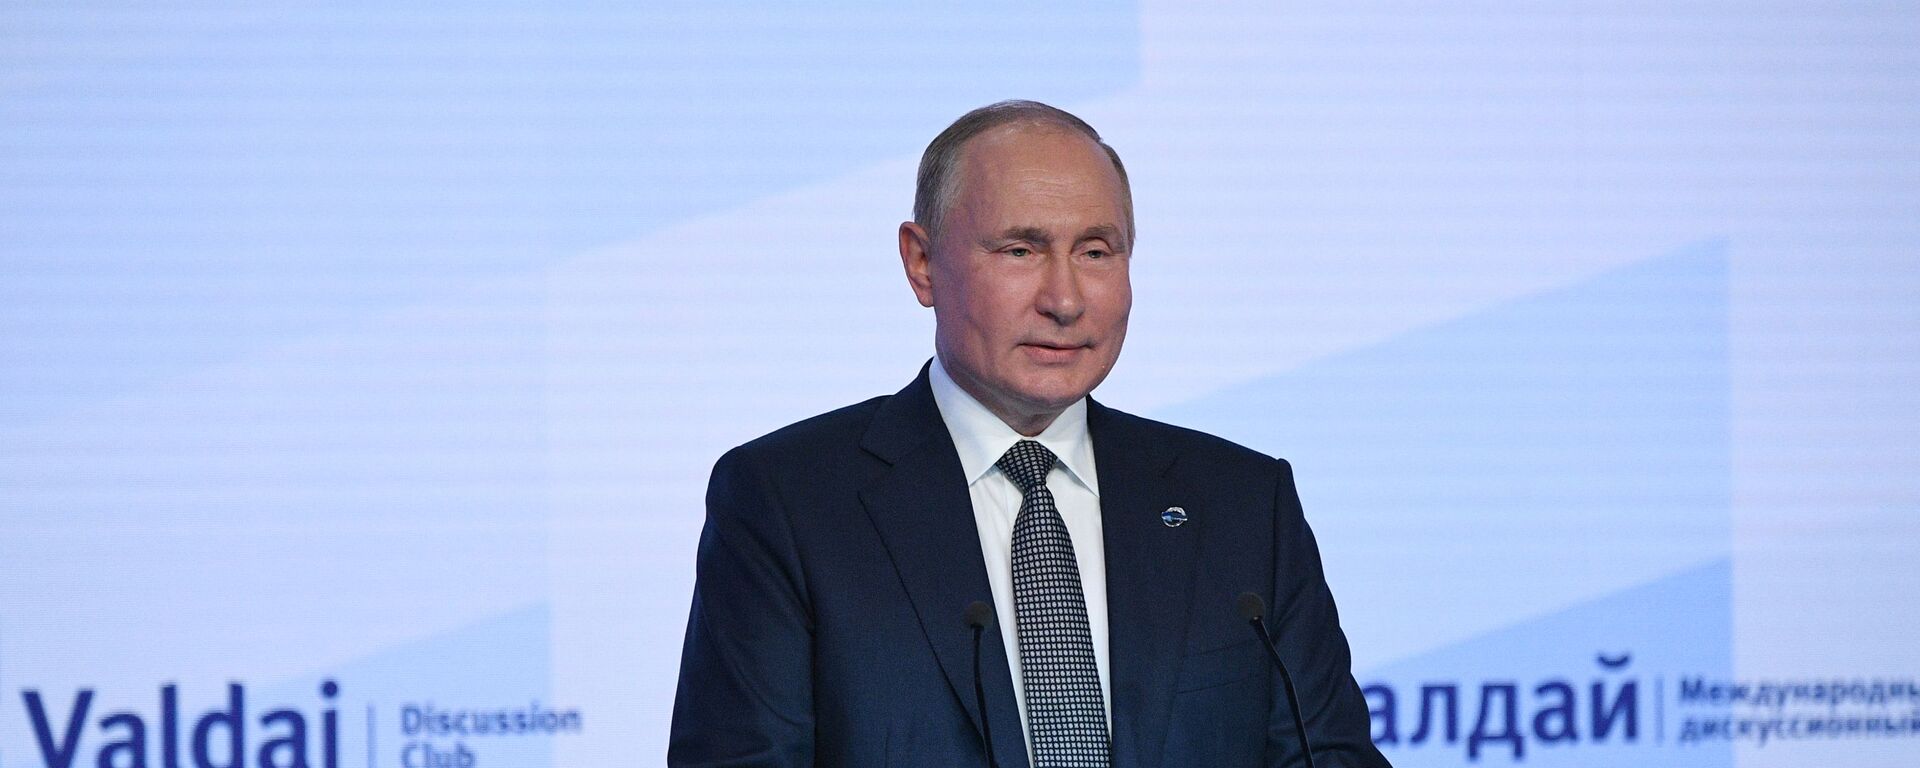 Tổng thống Nga Vladimir Putin tham gia một cuộc họp của Câu lạc bộ Valdai - Sputnik Việt Nam, 1920, 21.10.2021